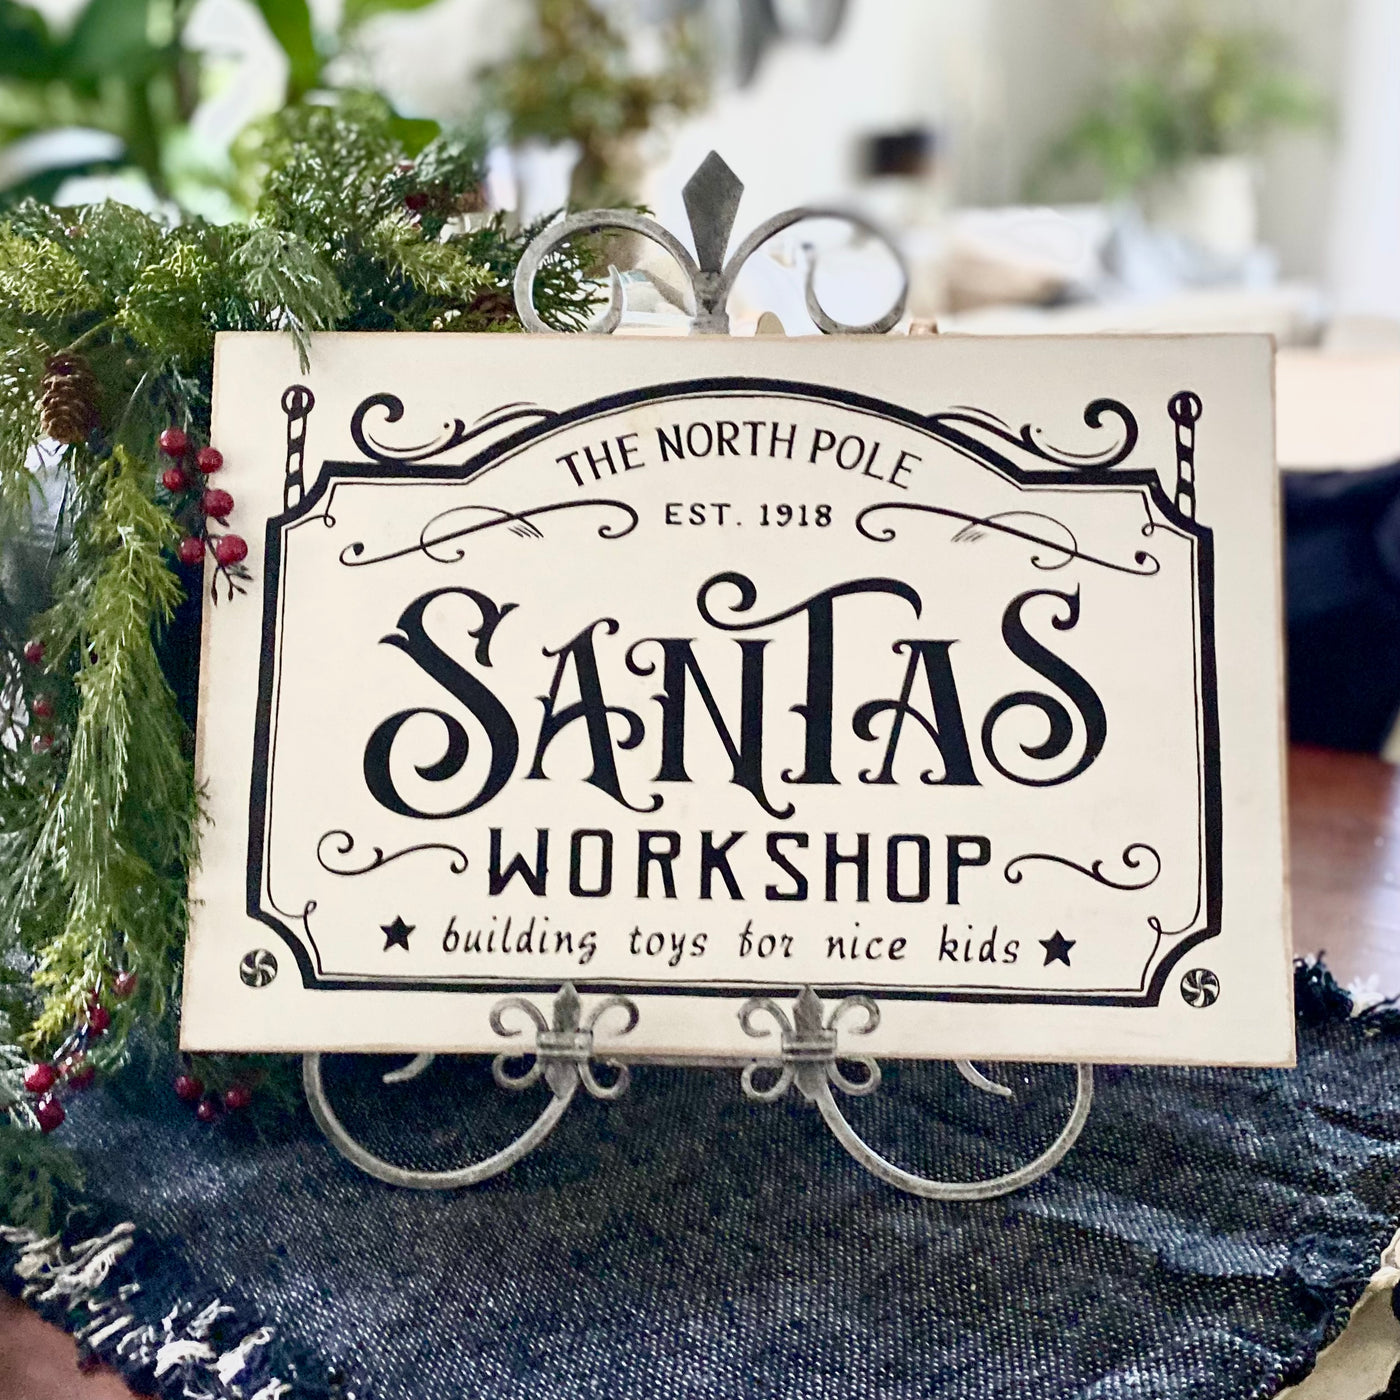 Santa's Workshop Sign